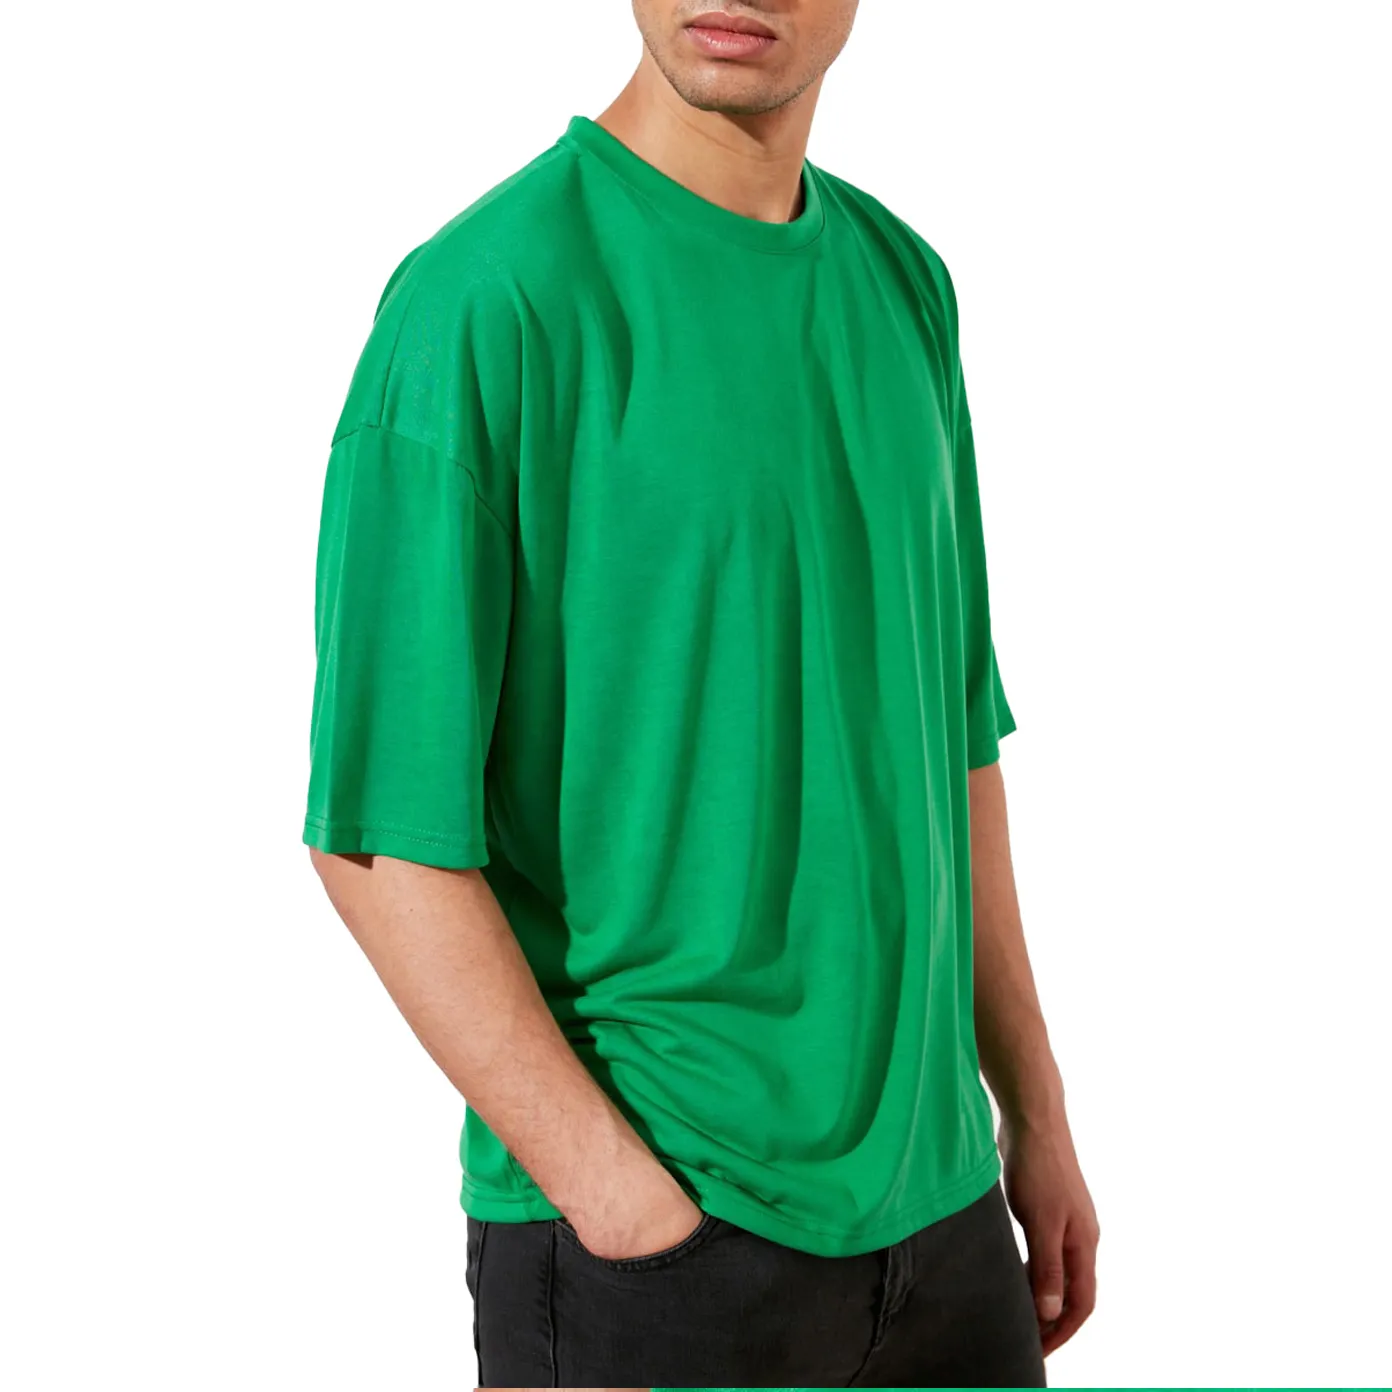 고품질 패션 남자 티 셔츠 Streetwear 도매 빈티지 Tshirt 넥타이 염료 힙합 T 셔츠 사용자 정의 느슨한 맞는 Boxy 스타일 디자인